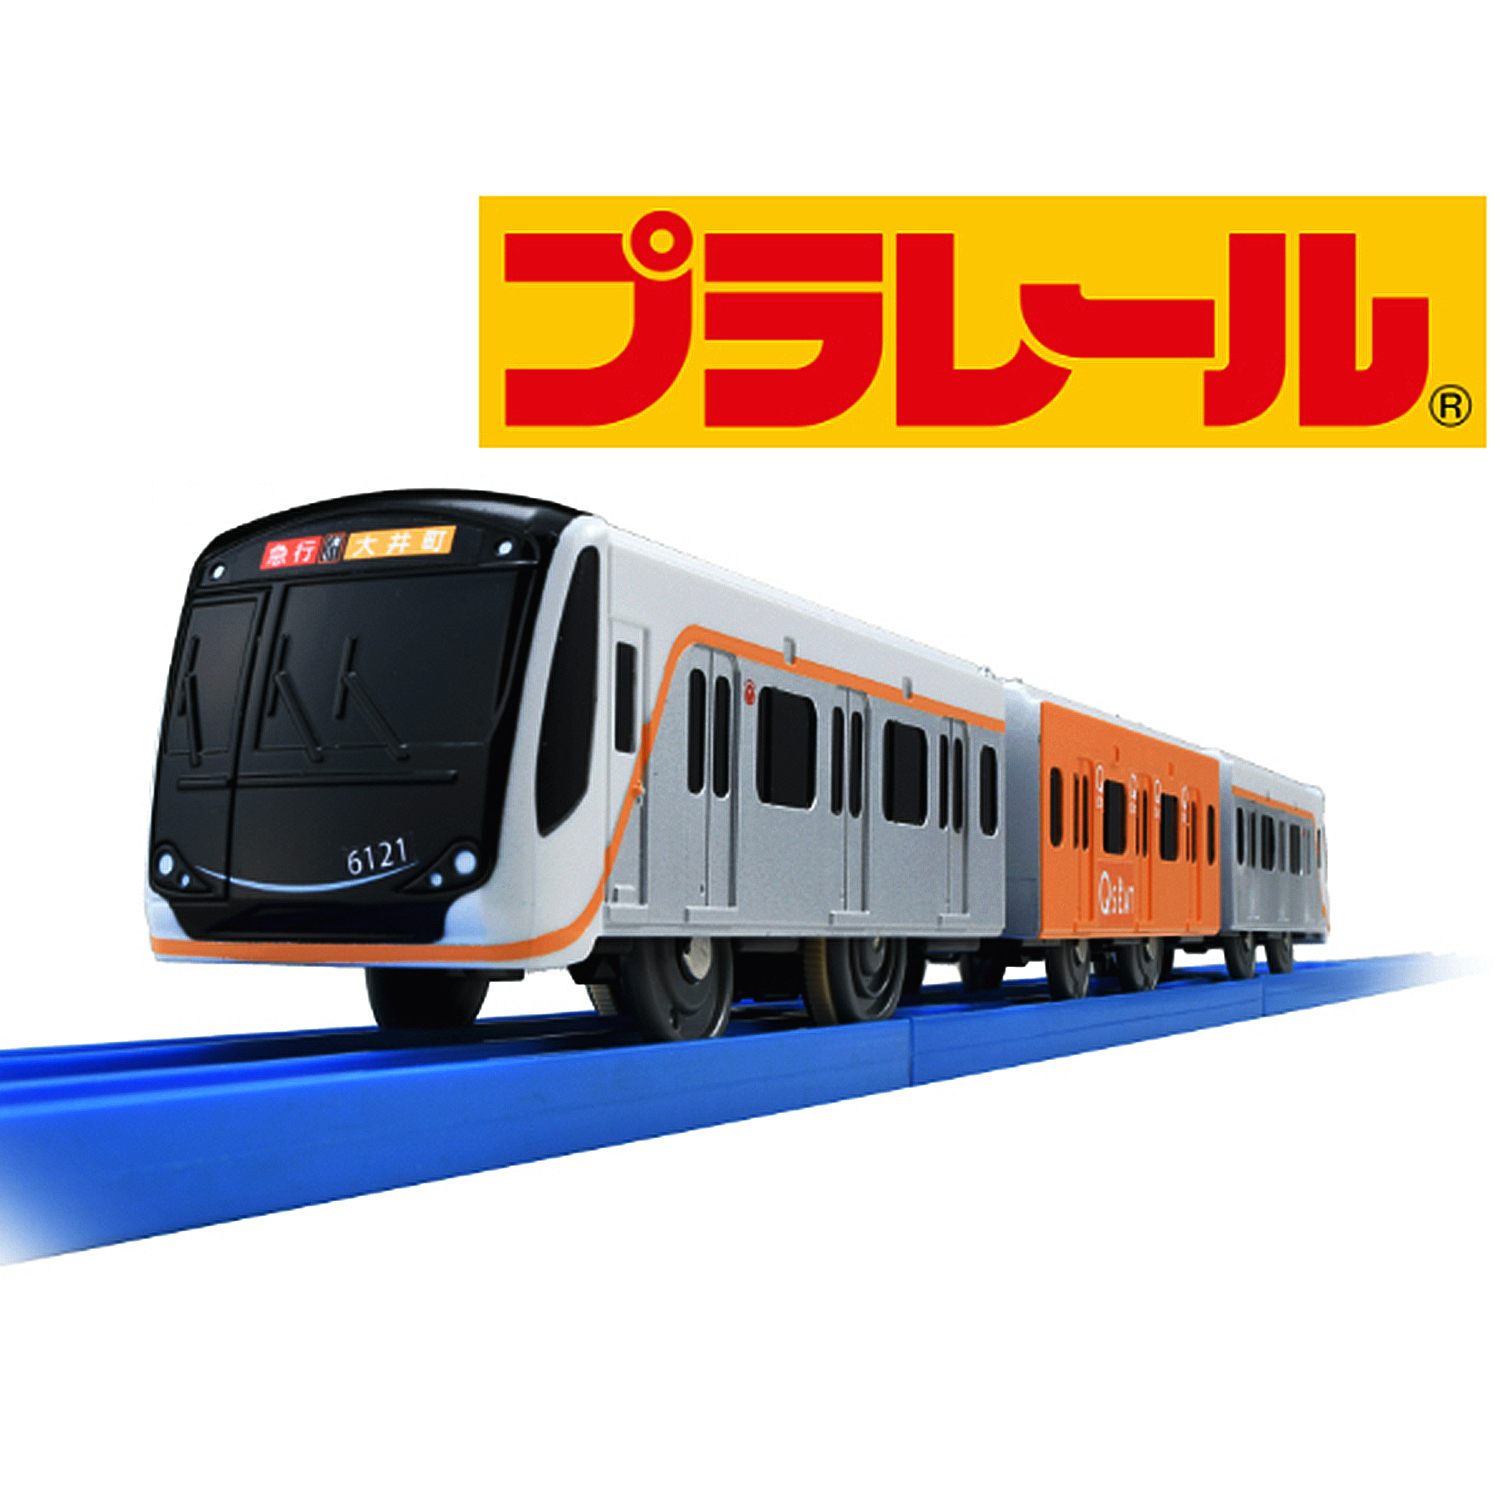 ≪プラレール≫東急電鉄6020系 Q SEAT